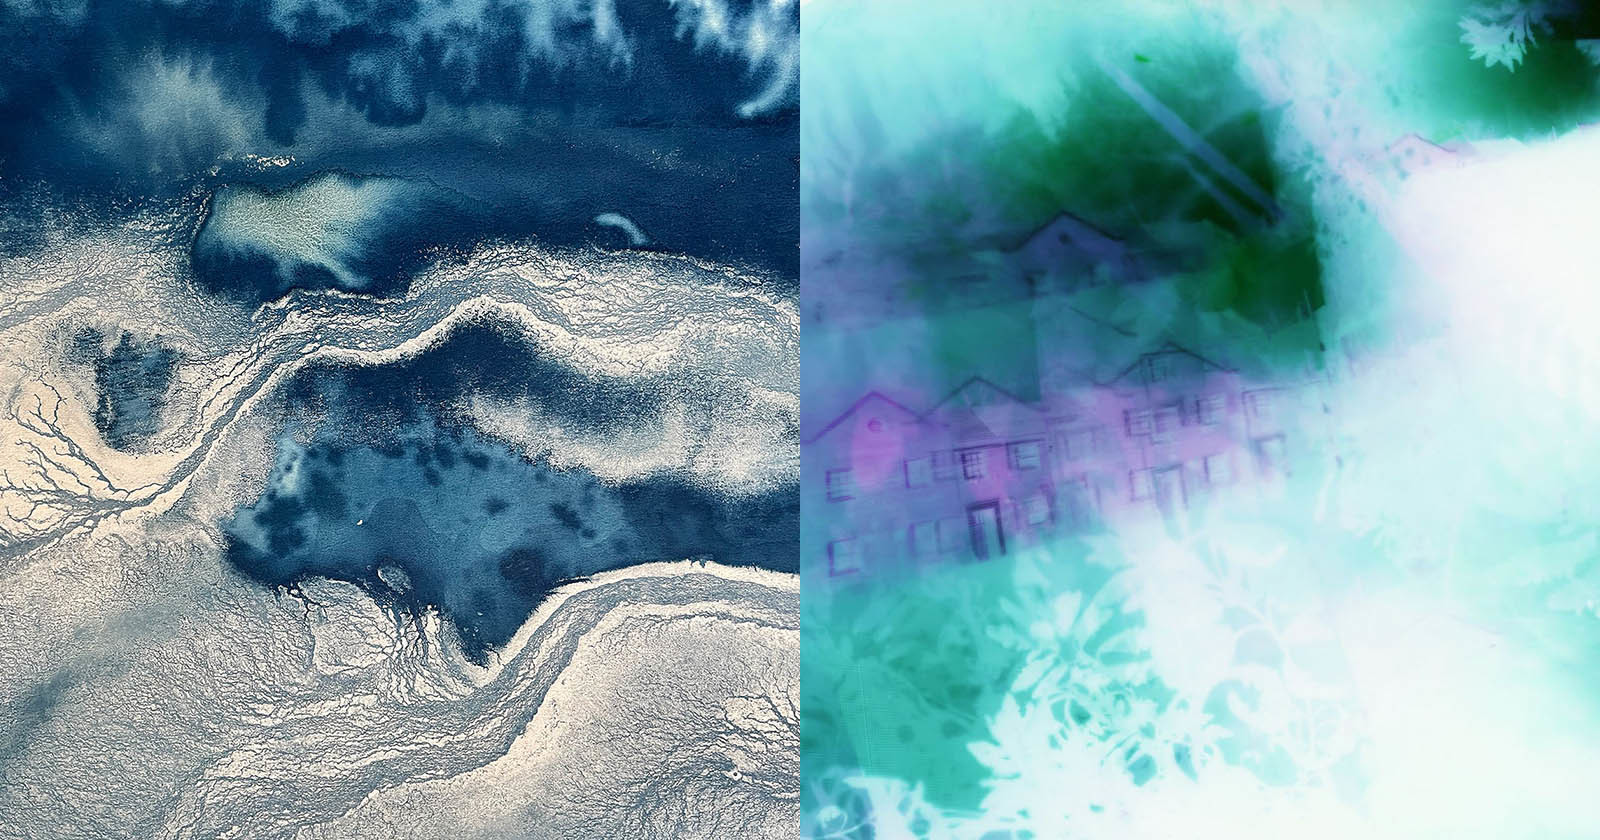  camera-less photographer creates beautifully abstract cyanotypes 